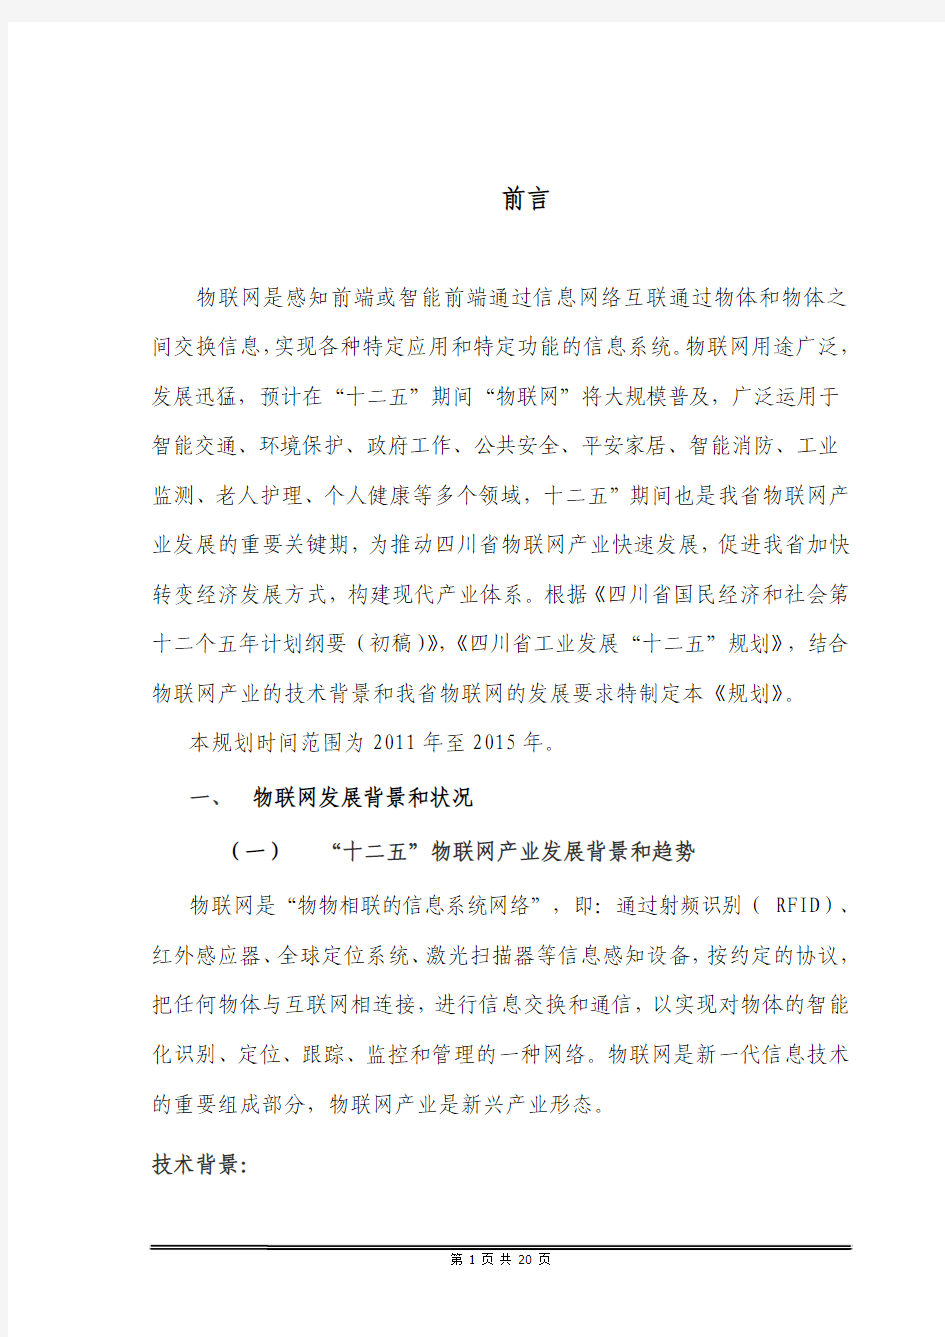 四川省物联网产业发展规划-20101229